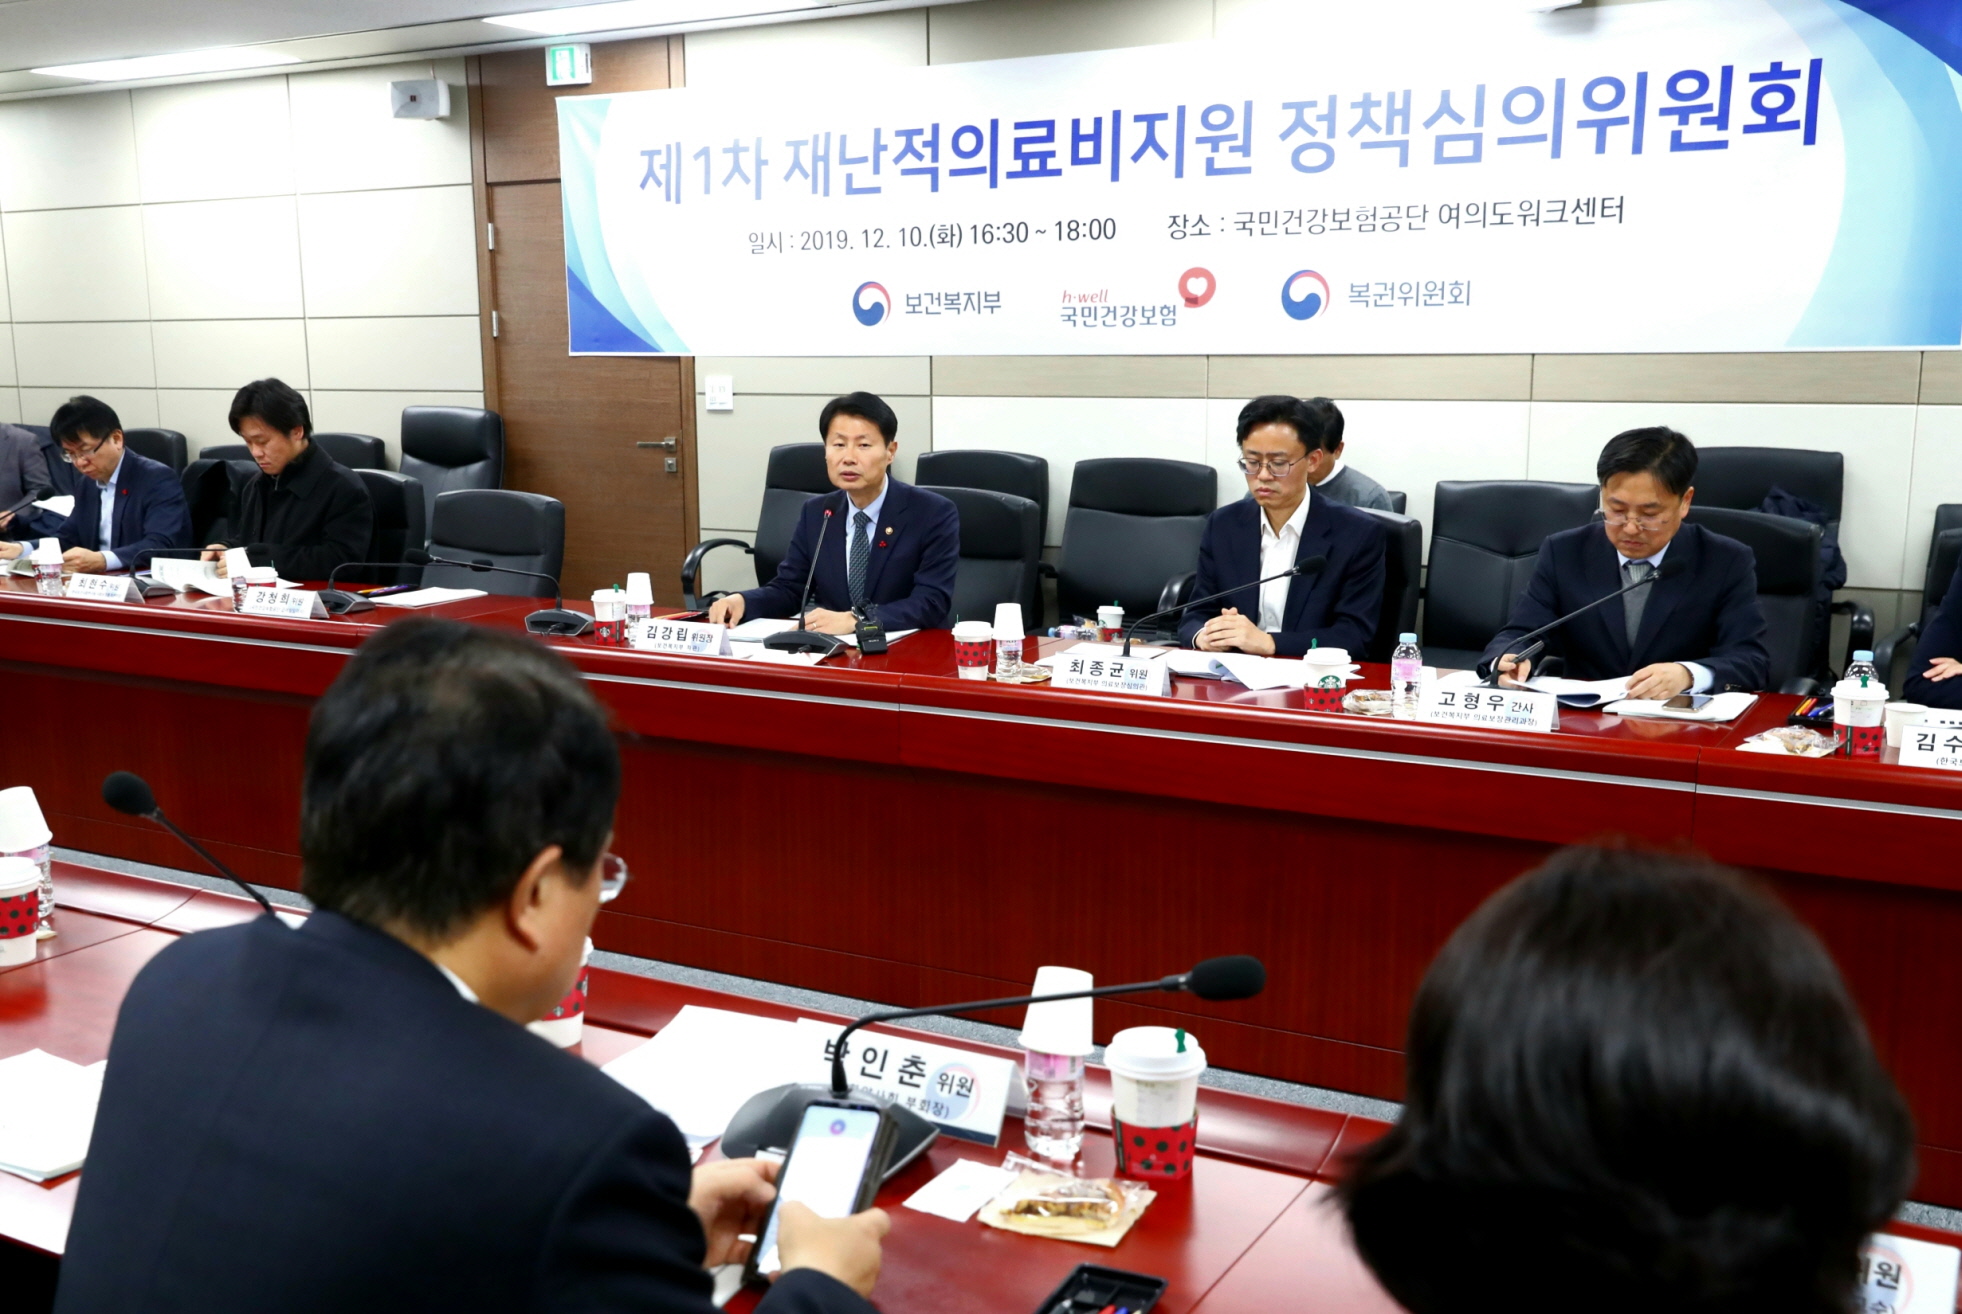 「재난적의료비지원 정책심의위원회」제1차 회의 개최 (12.10) 사진9